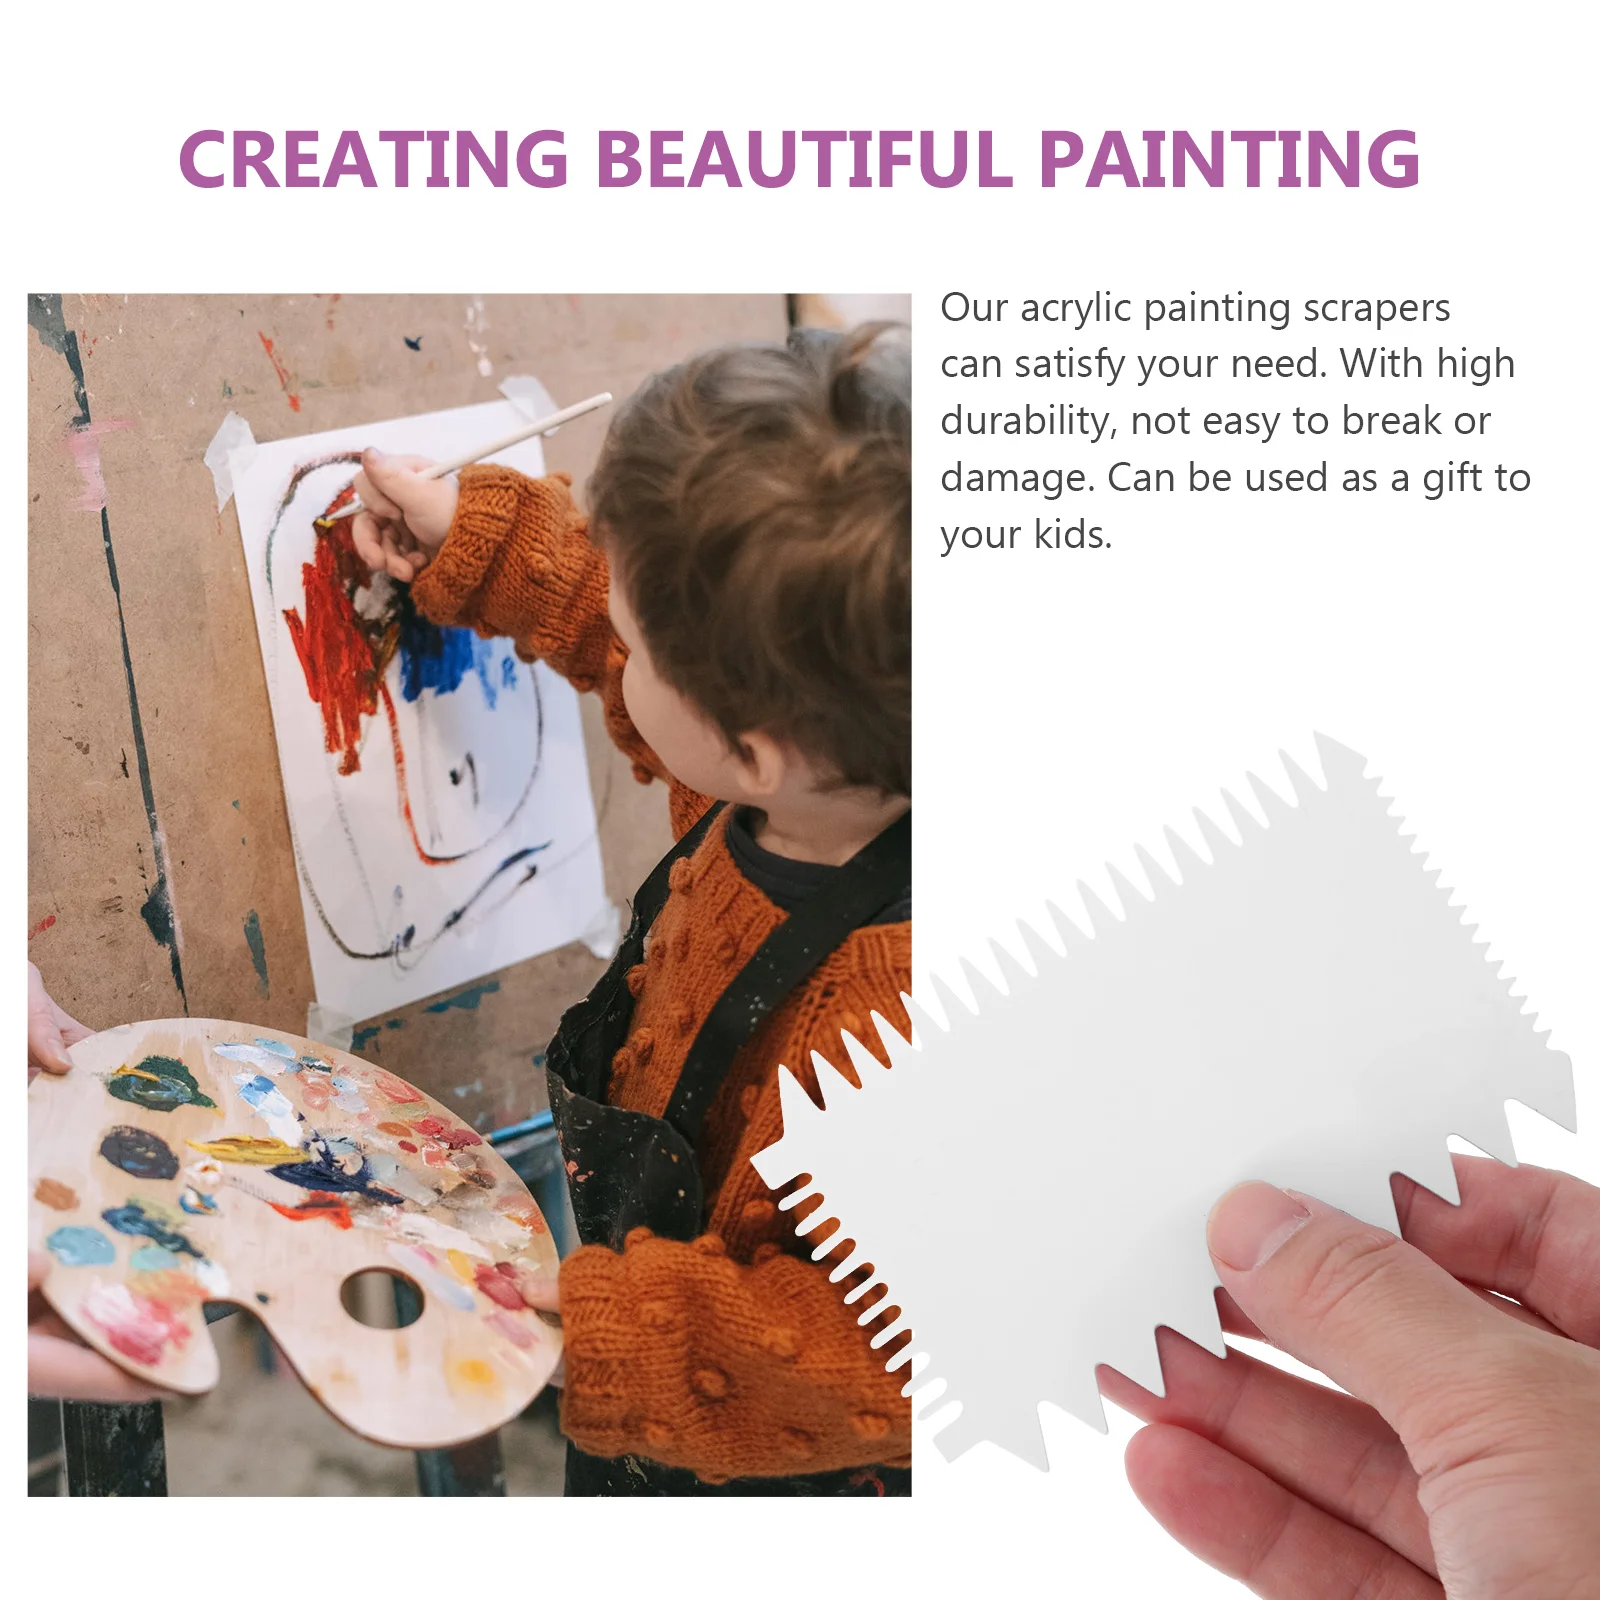 7 szt. Skrobak do malowania dzieci skrobaki akcesoria akcesoria do rysowania Graffiti akrylowe rękodzieło dla dzieci DIY